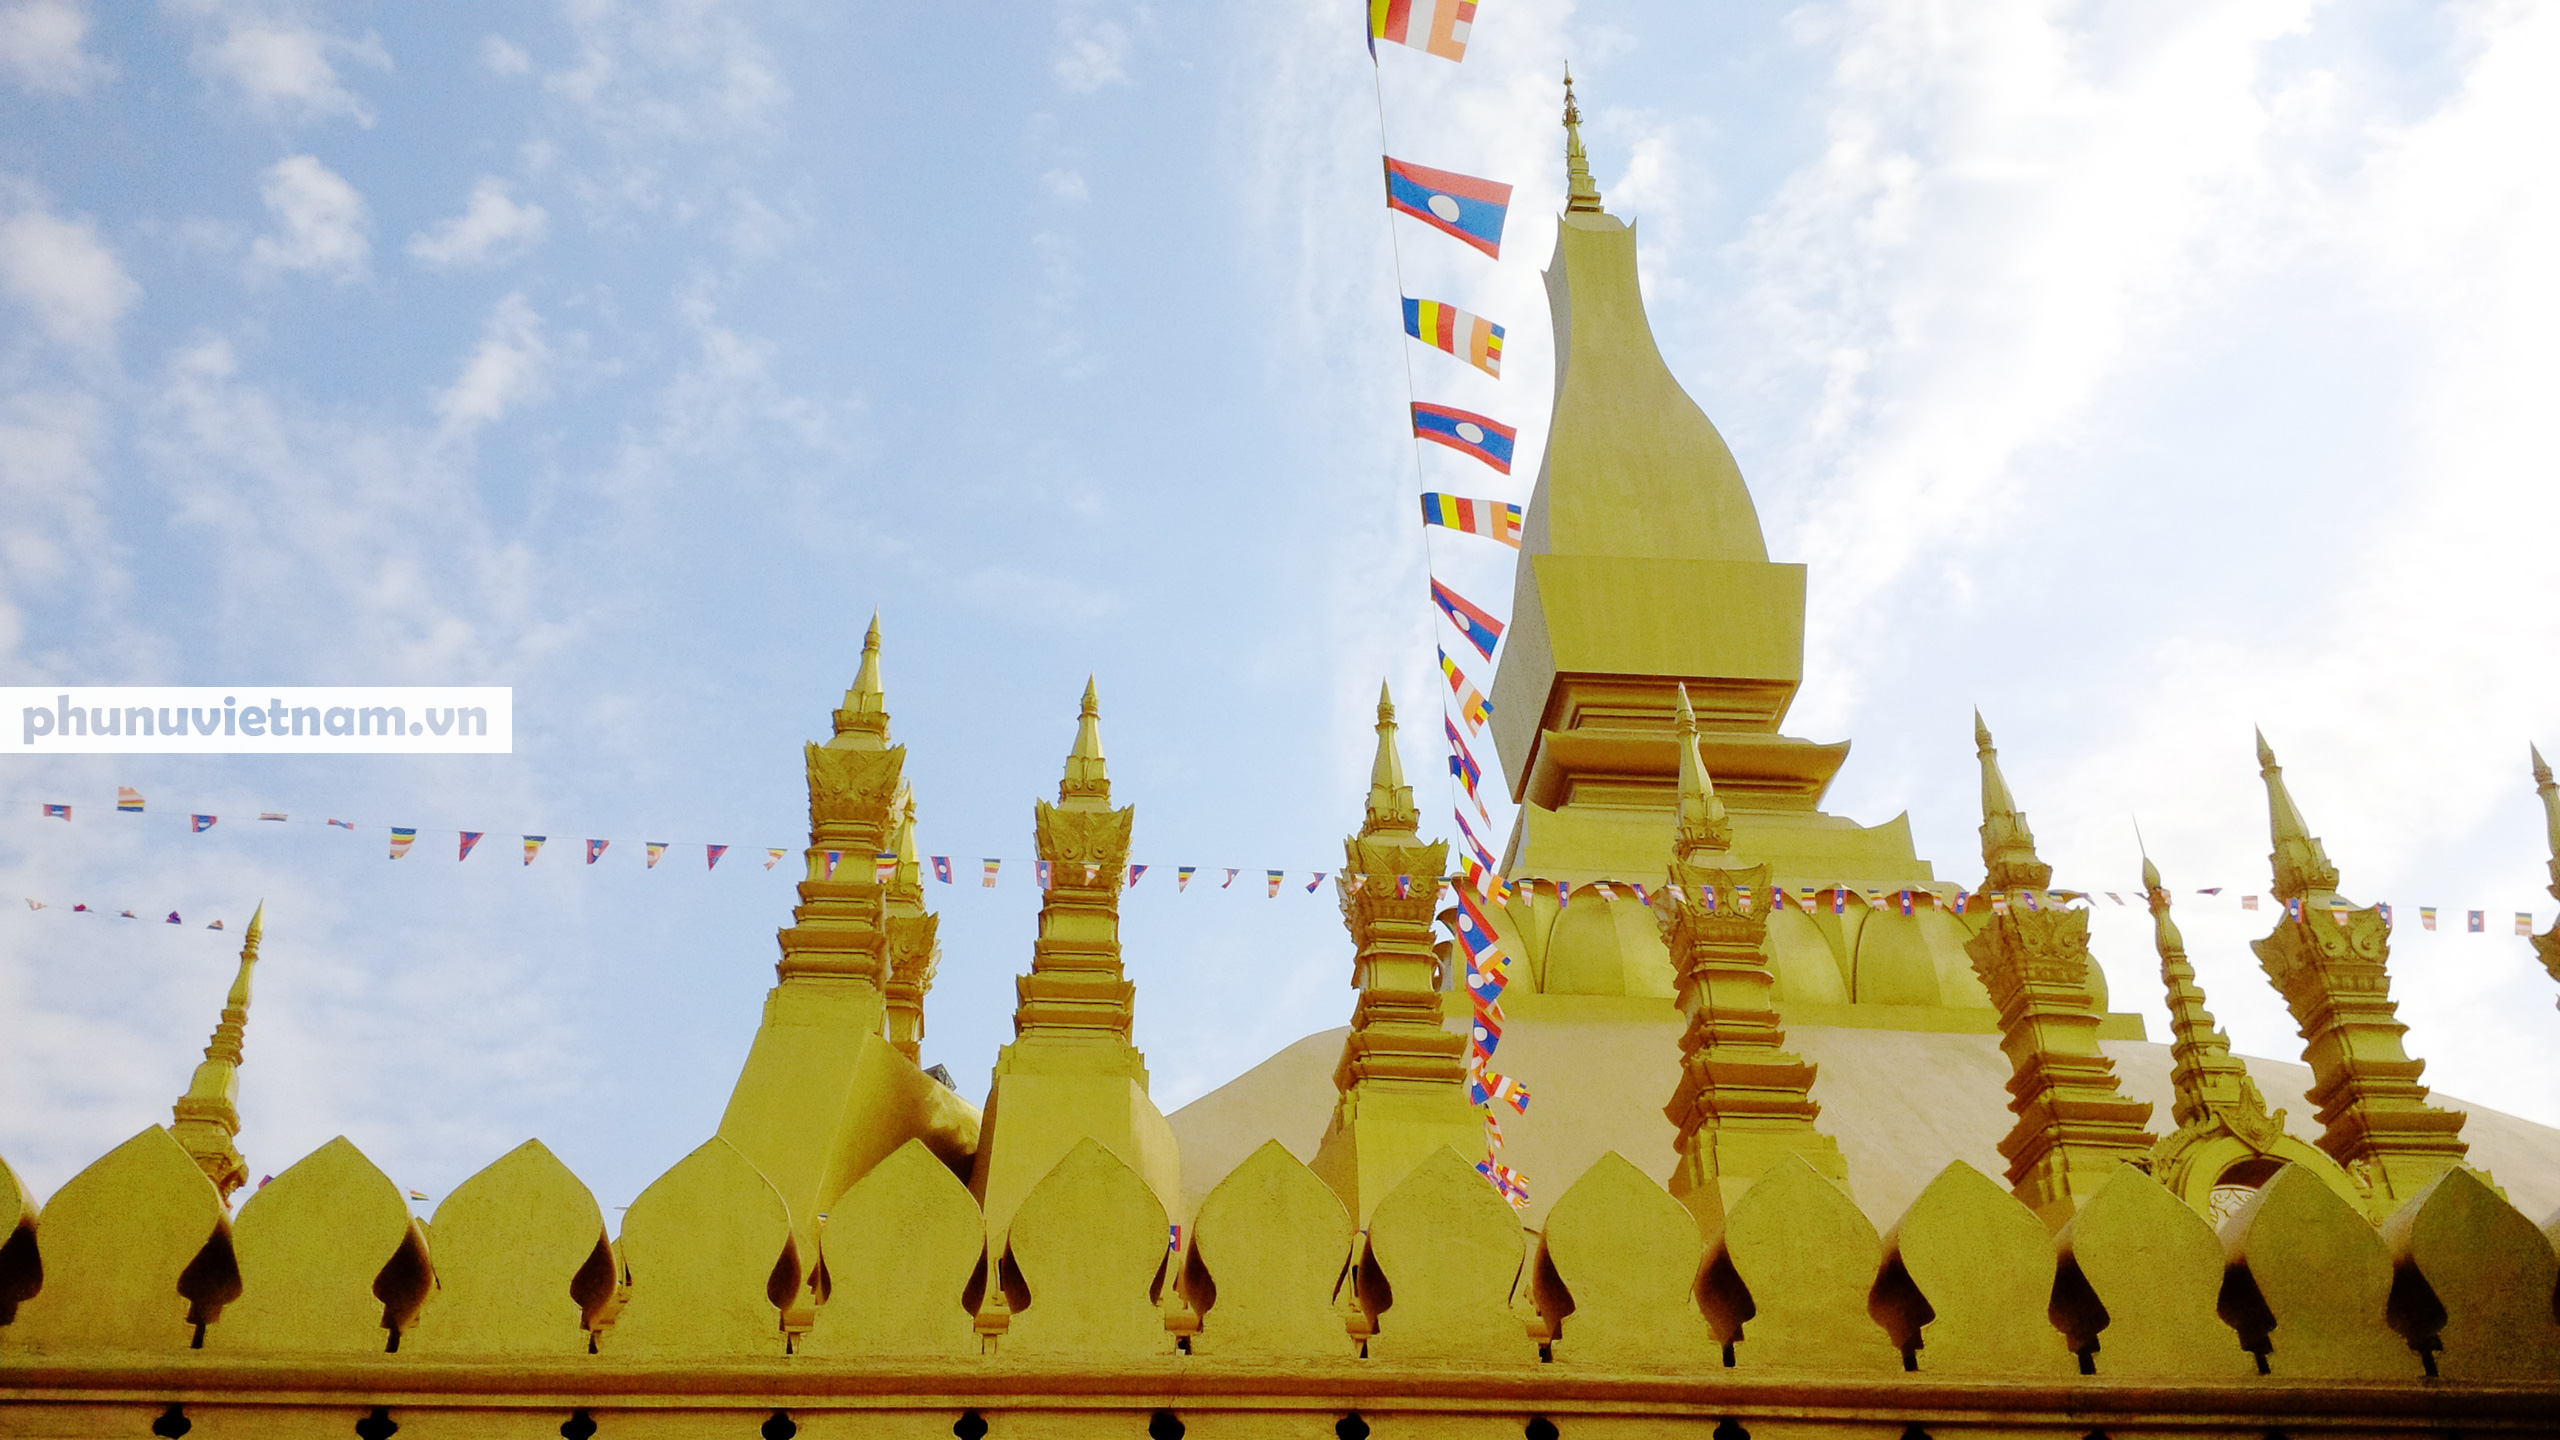 Chiêm ngưỡng ngôi tháp vàng lớn nhất của Lào, gần 500 tuổi tráng lệ giữa đất trời - Ảnh 13.